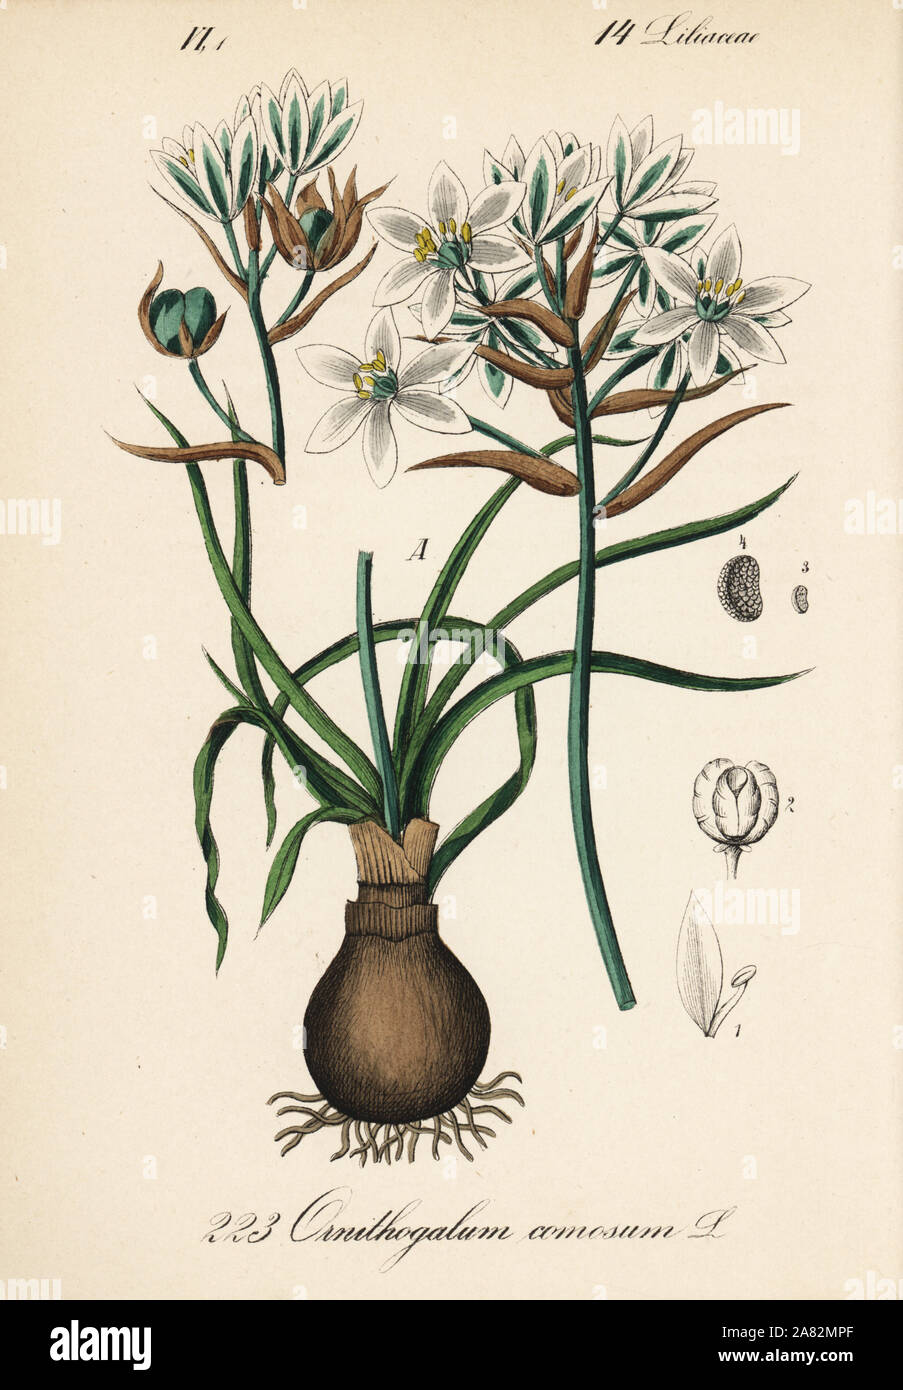 Ornithogalum comosum. Handcoloured lithograph from Diederich von Schlechtendal's German Flora (Flora von Deutschland), Jena, 1871. Stock Photo